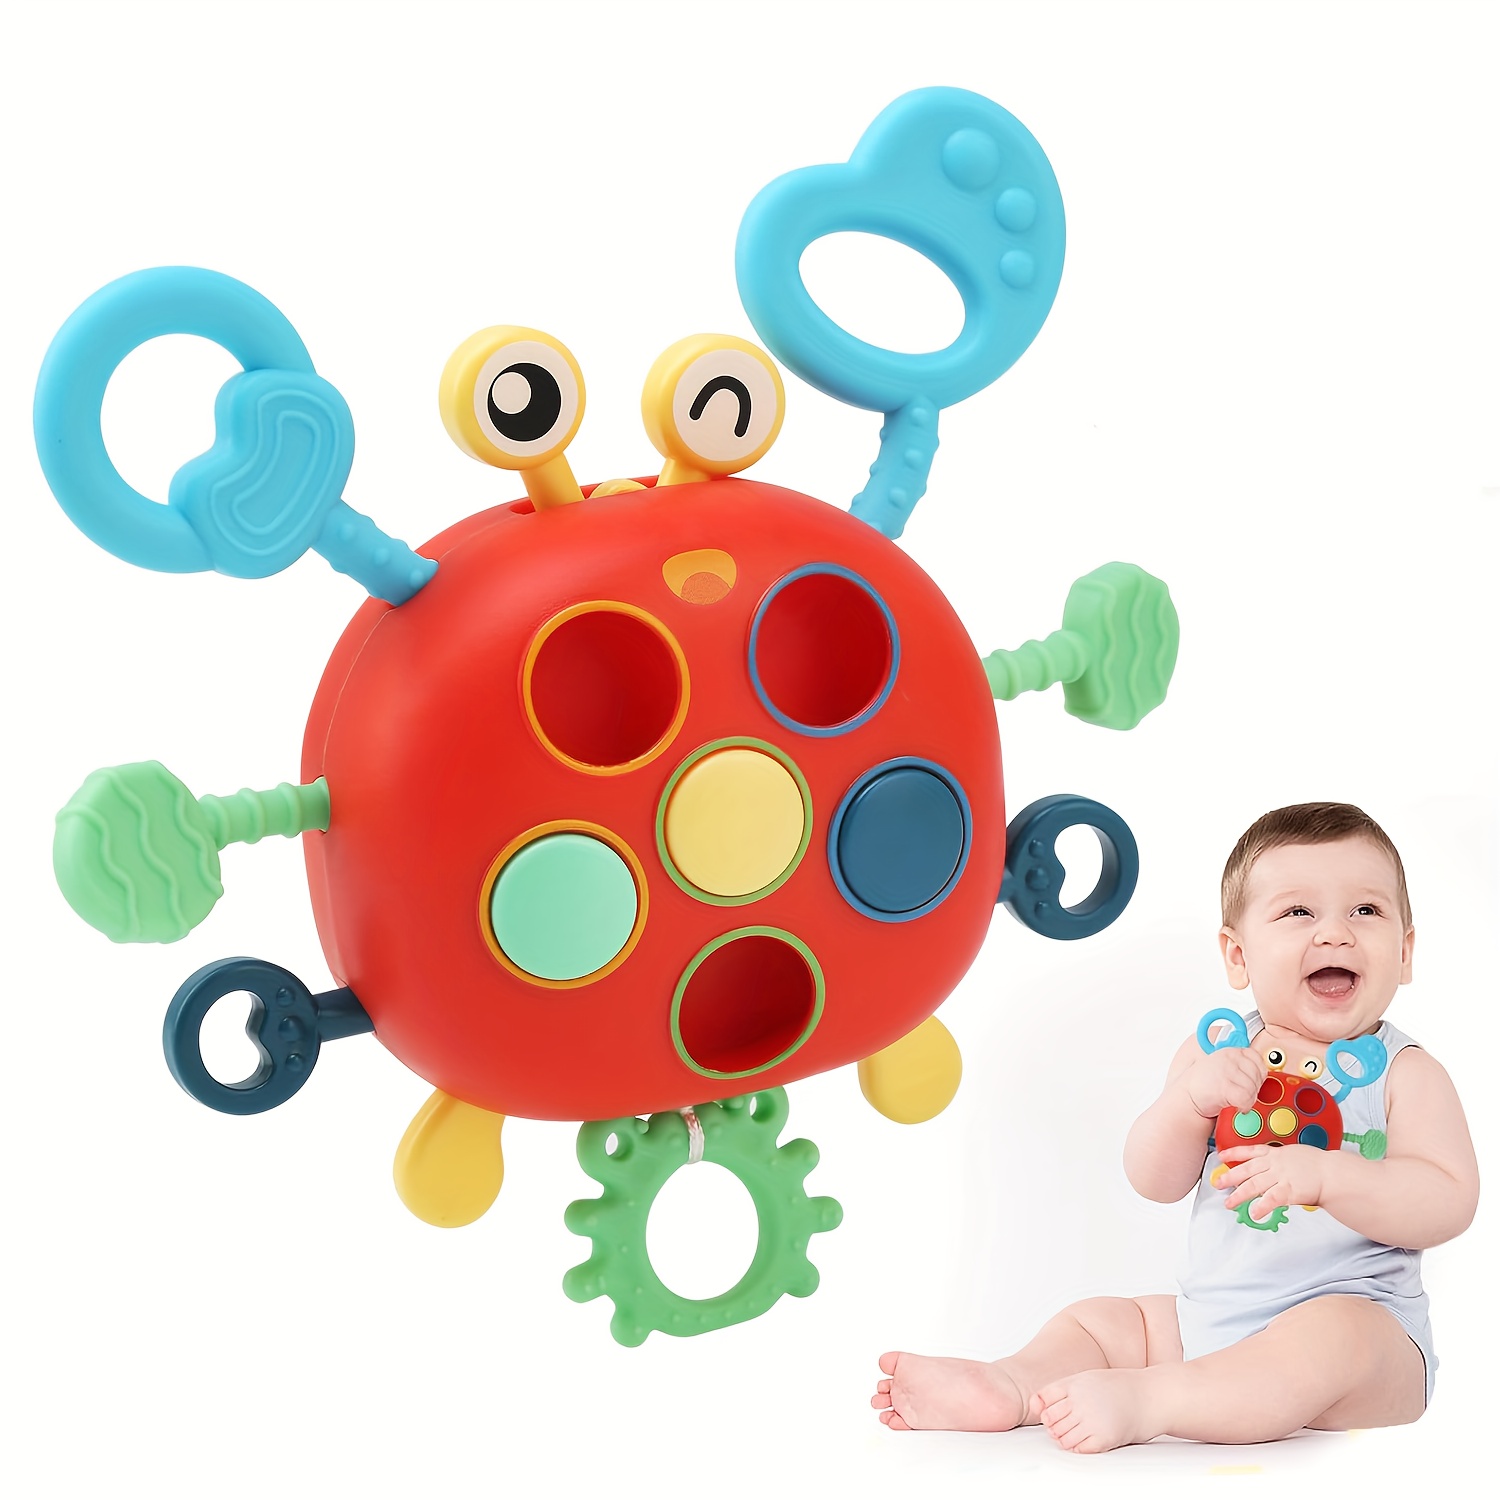 Juguetes Montessori para bebés 0 a 6 meses juegos cuerda tracción silicona  Juguetes Educativos niños pequeños mordedor sensorial